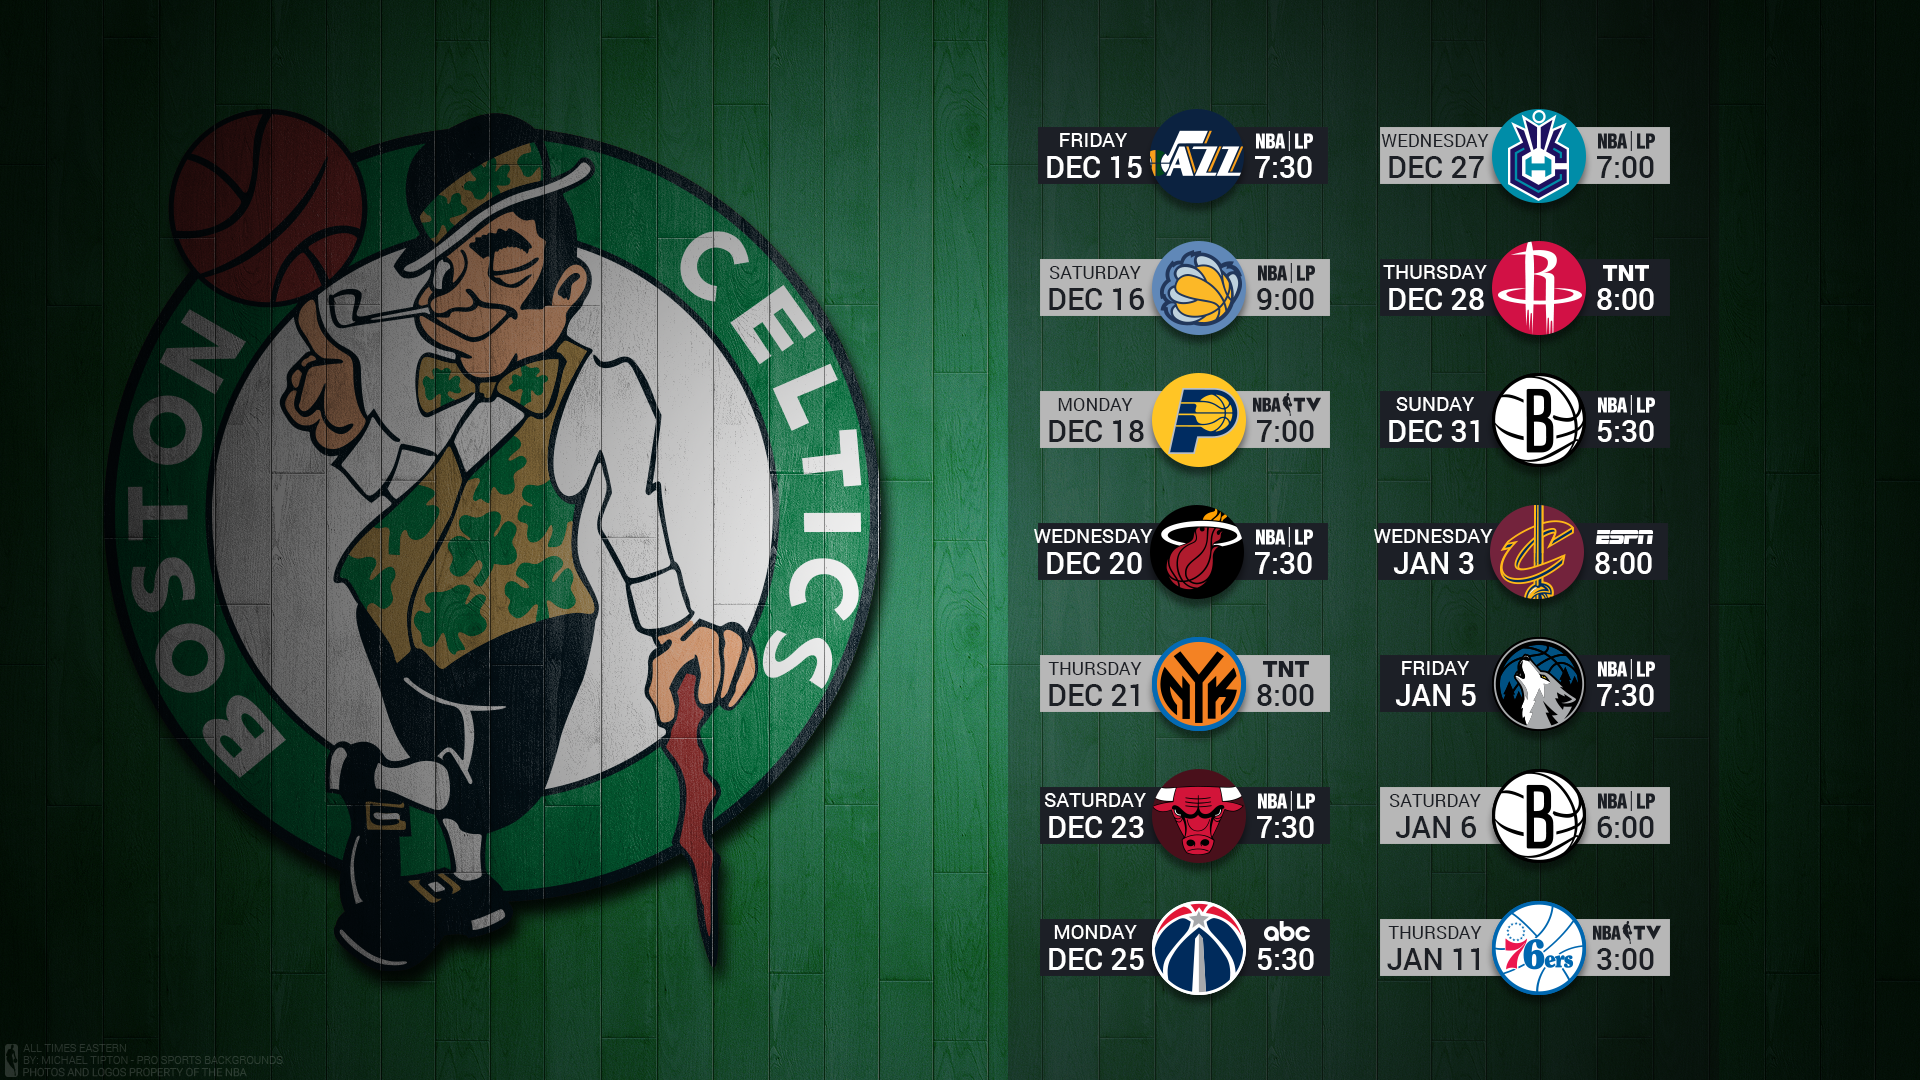 Celtics Wallapaper Wallpapers